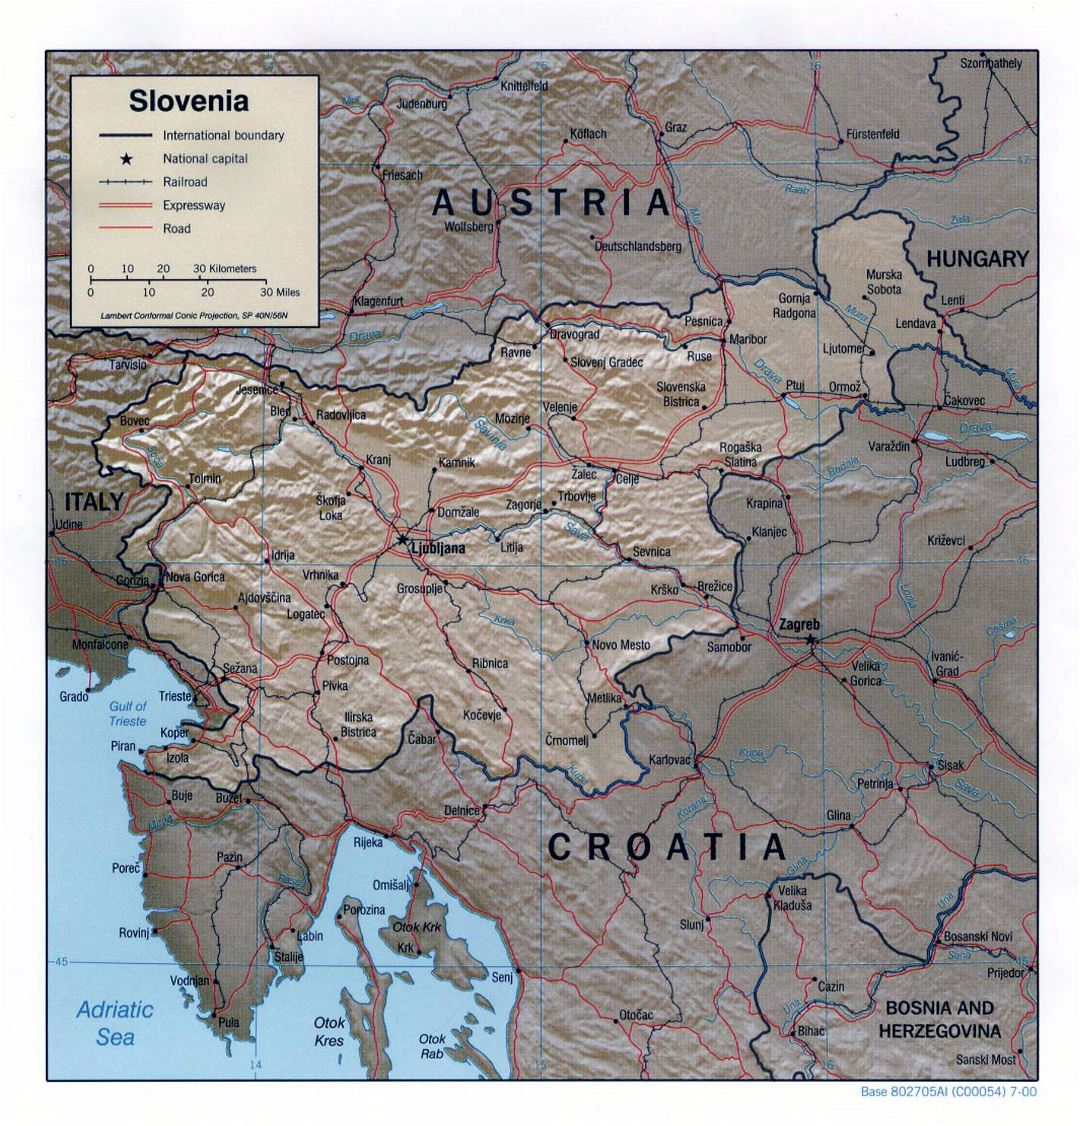 Grande mapa político de Eslovenia con relieve, carreteras, ferrocarriles y ciudades principales - 2000